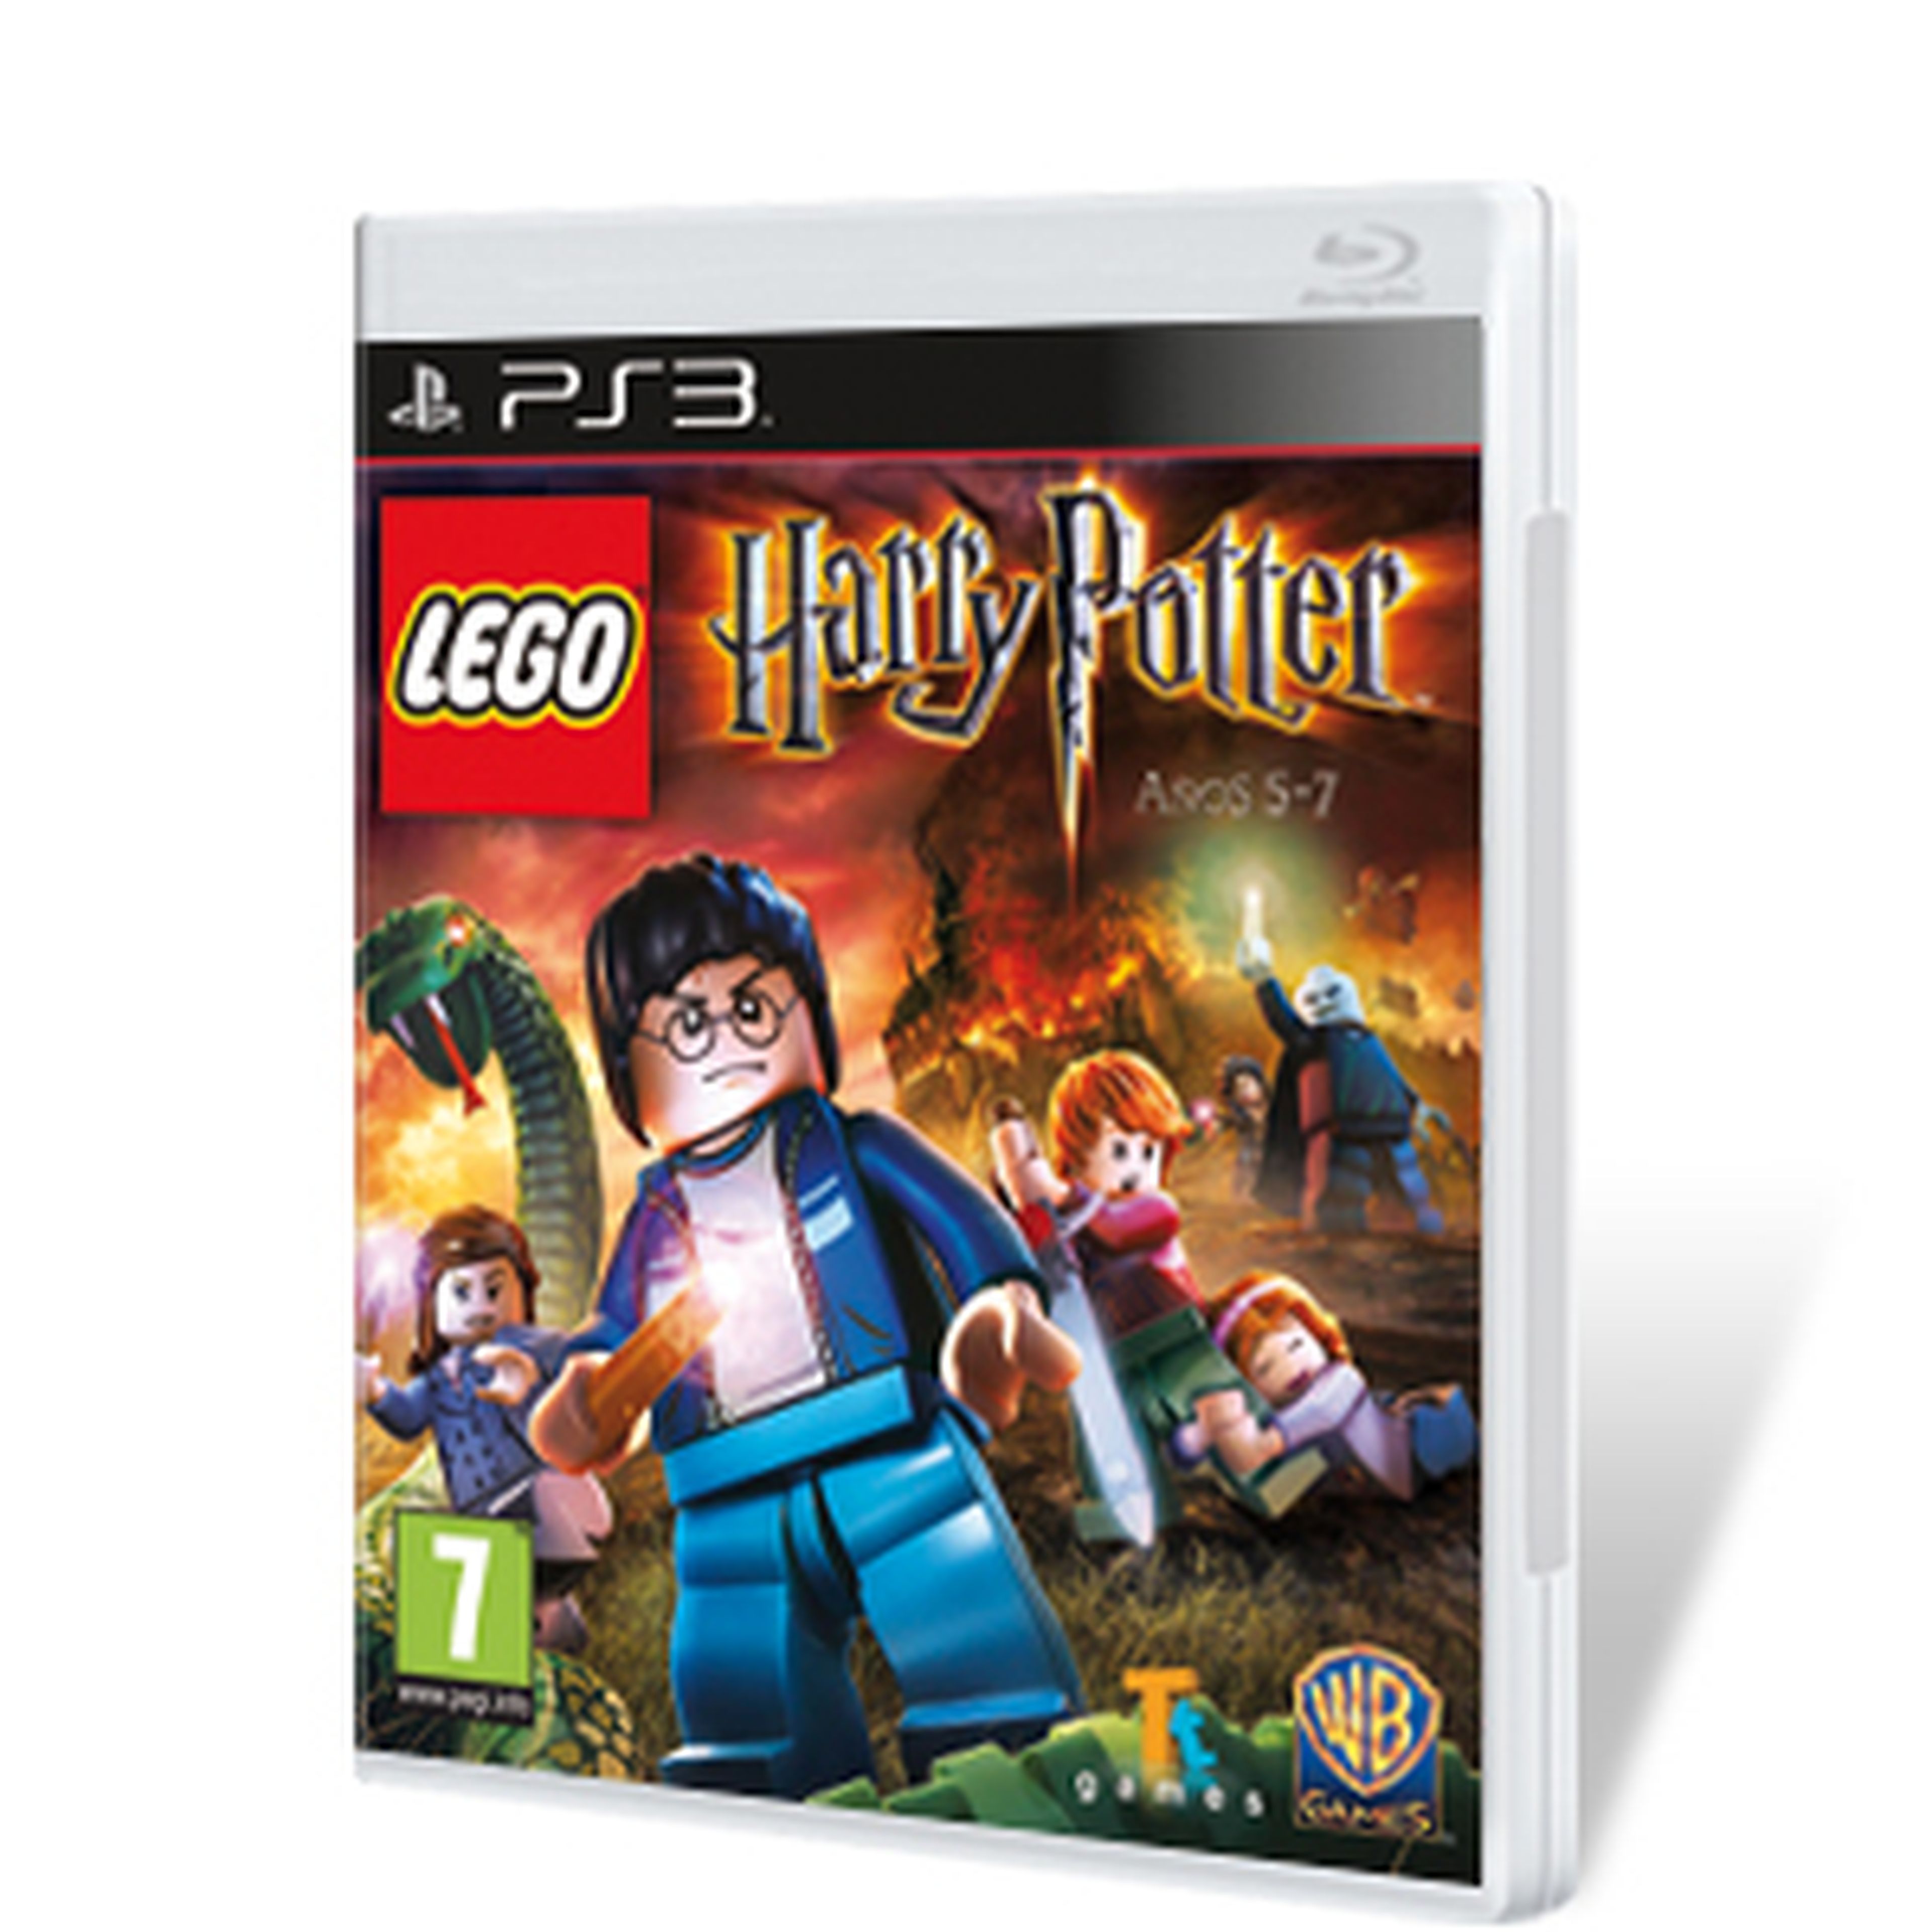 LEGO Harry Potter Años 5-7 para PS3